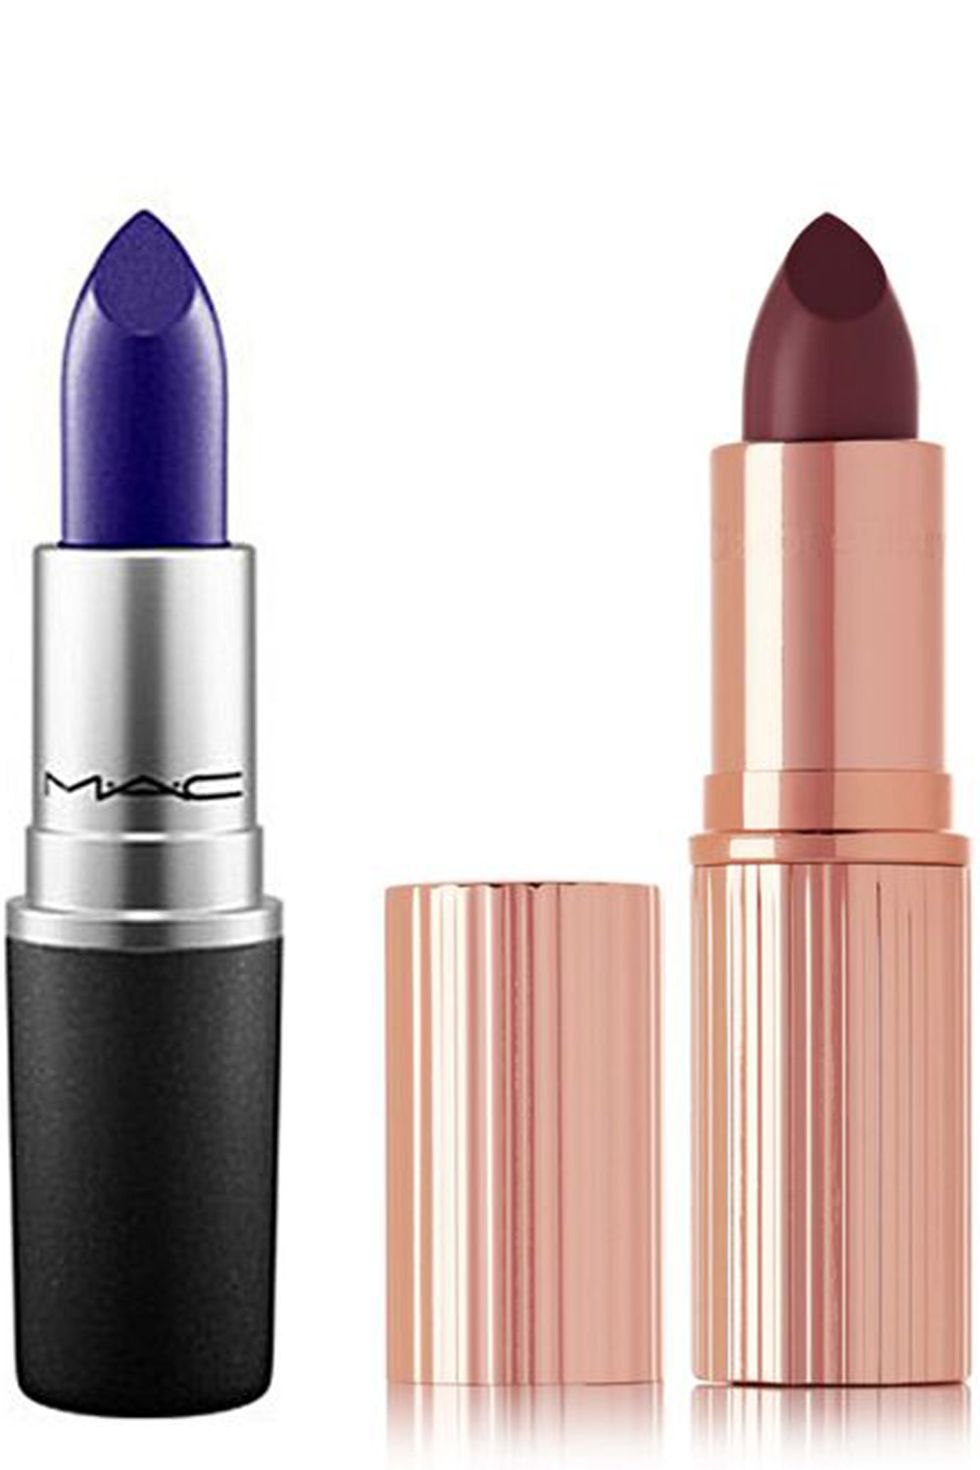 Halloween beauty buys - dark lipsticks